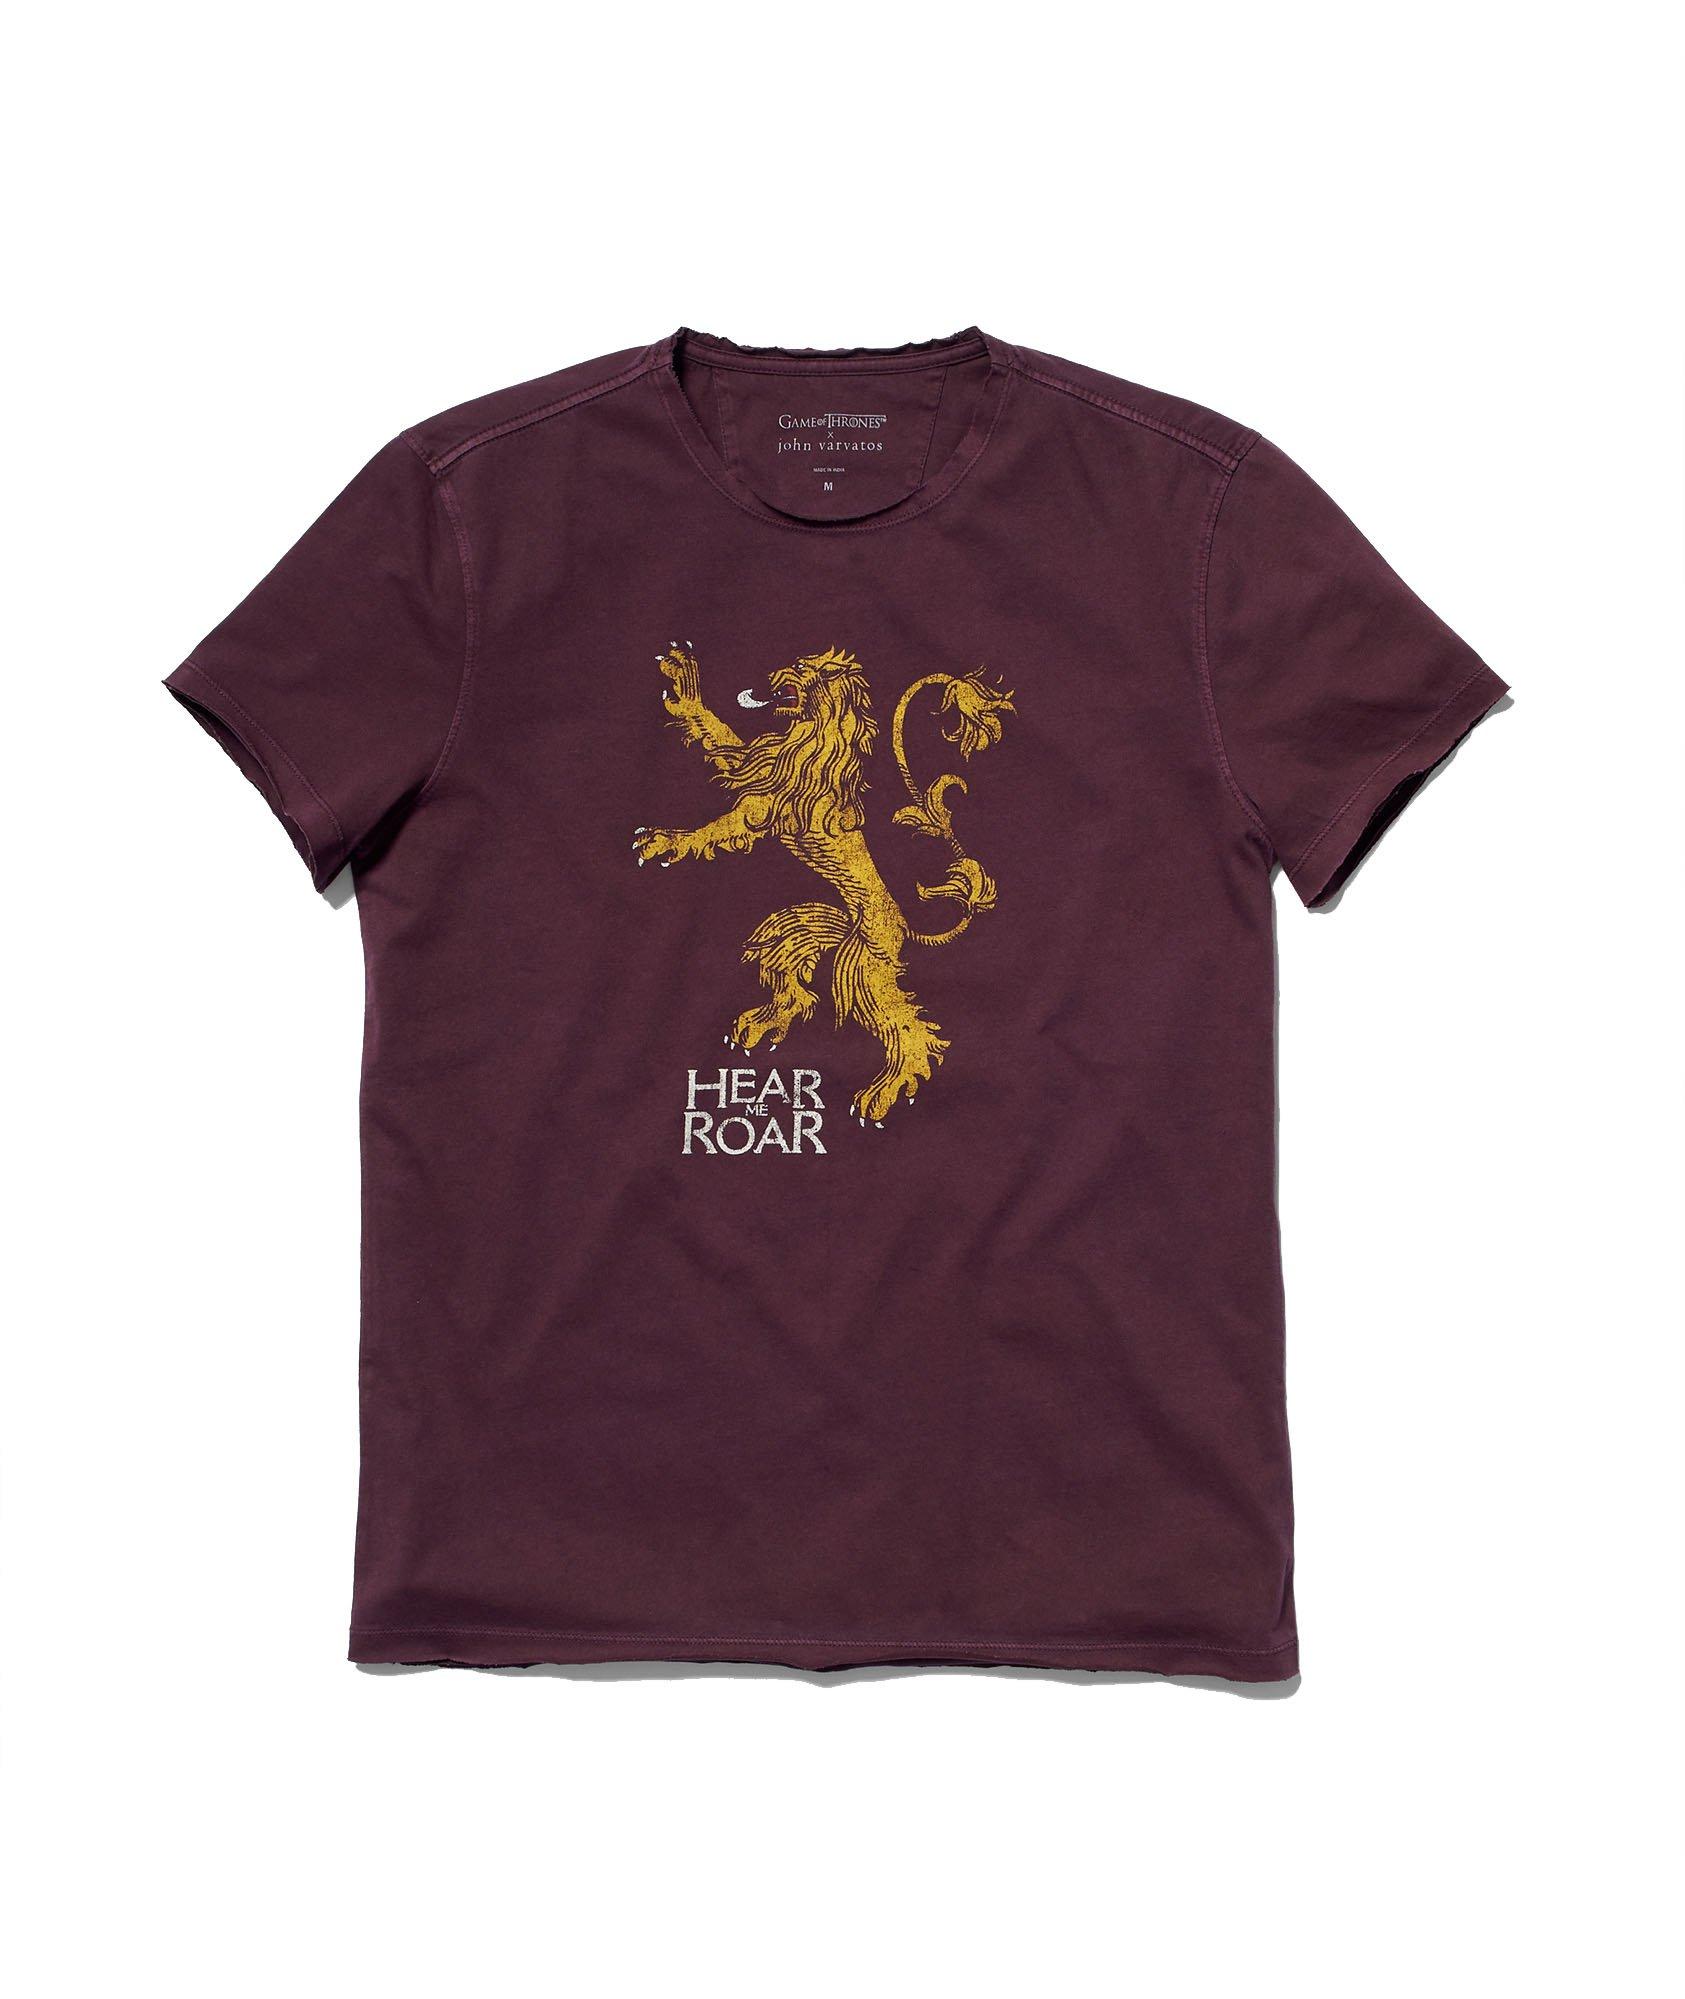 T-shirt de Game of Thrones image 0